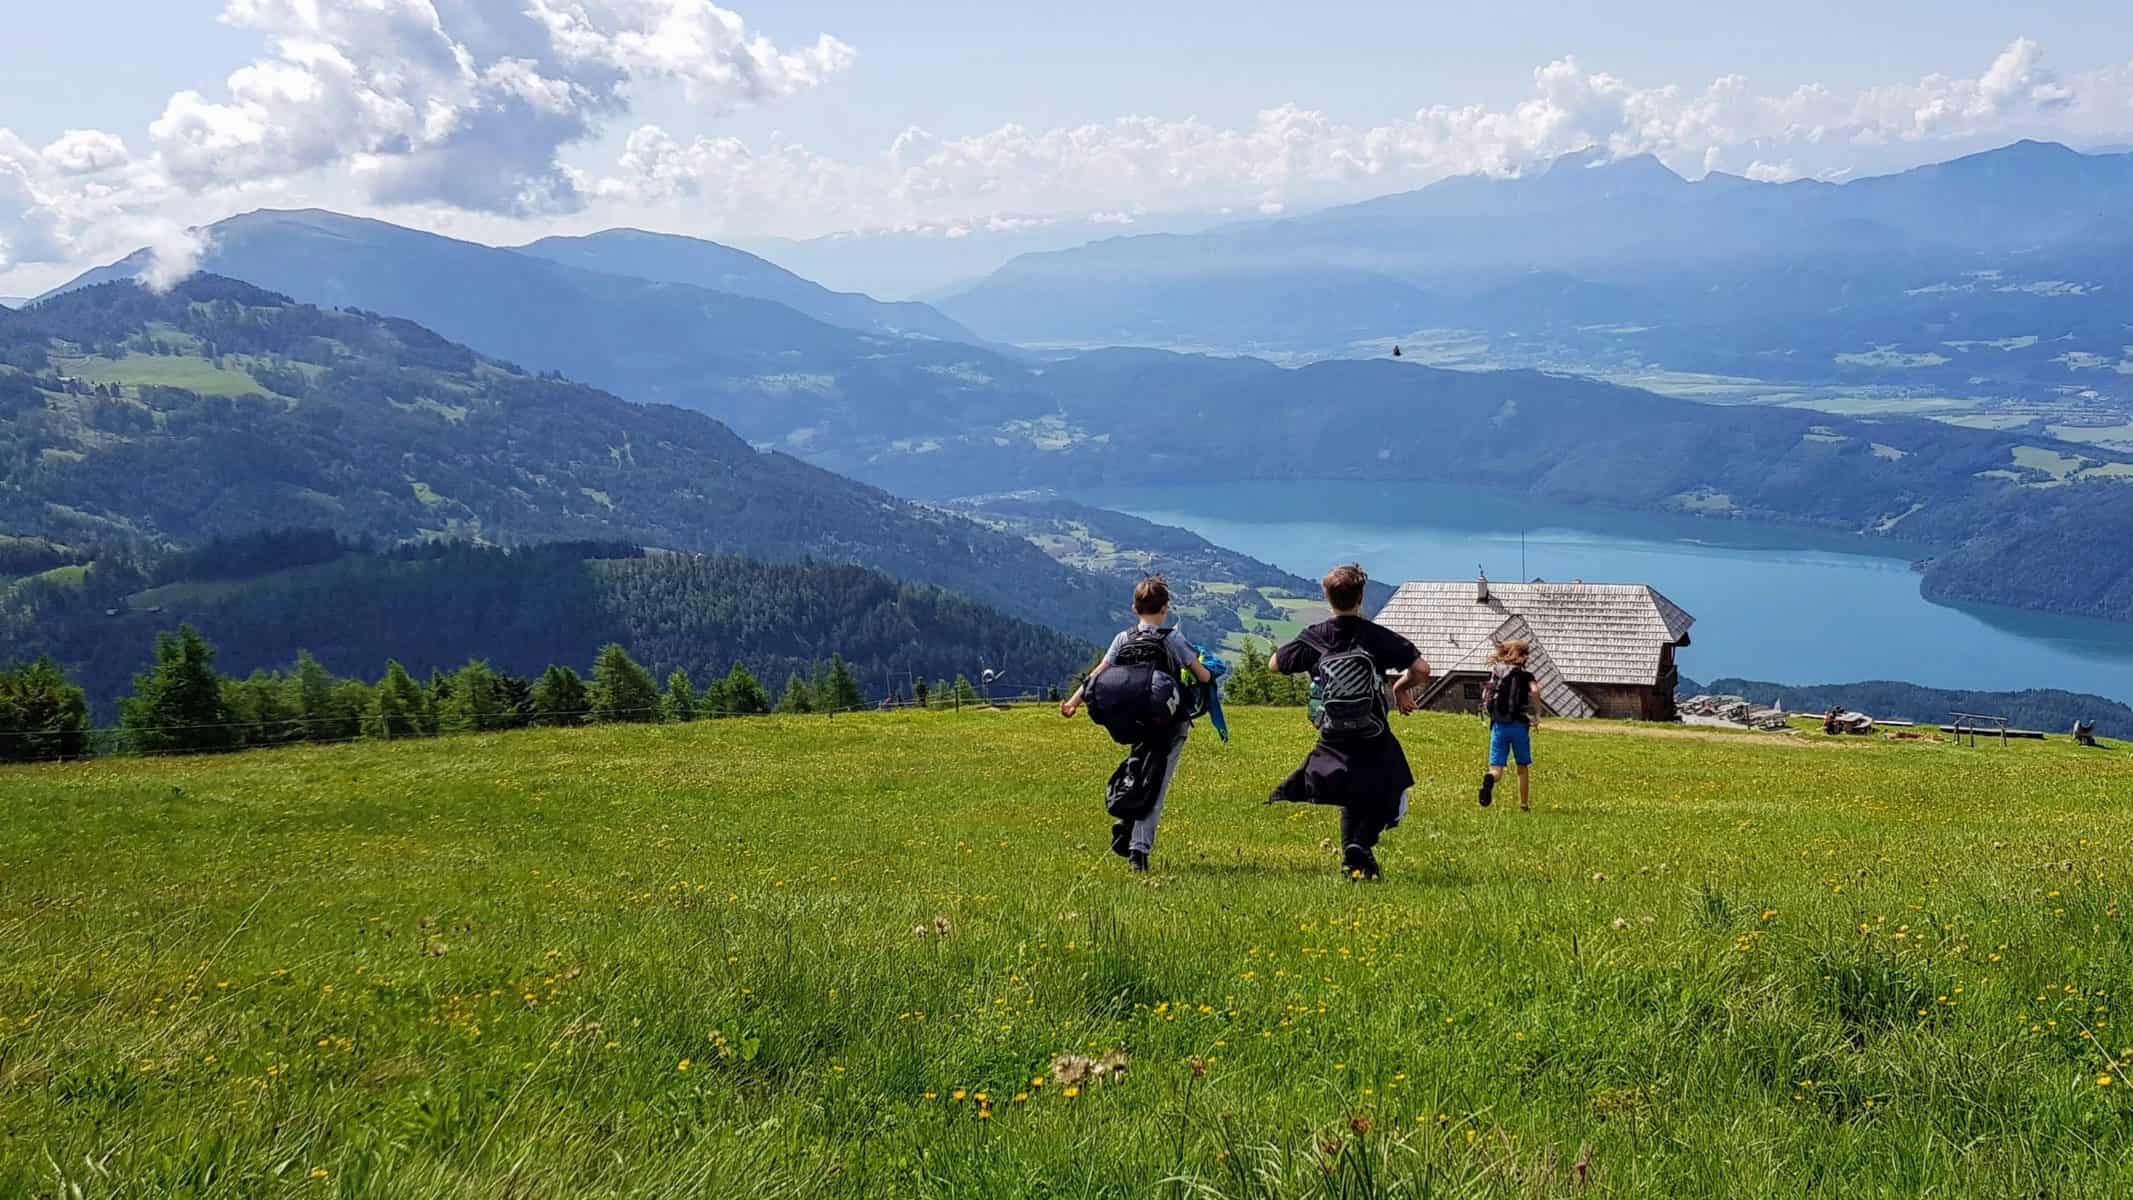 Kinder wandern auf Alm mit Seepanorama - Ausflugstipps für Familien in Kärnten